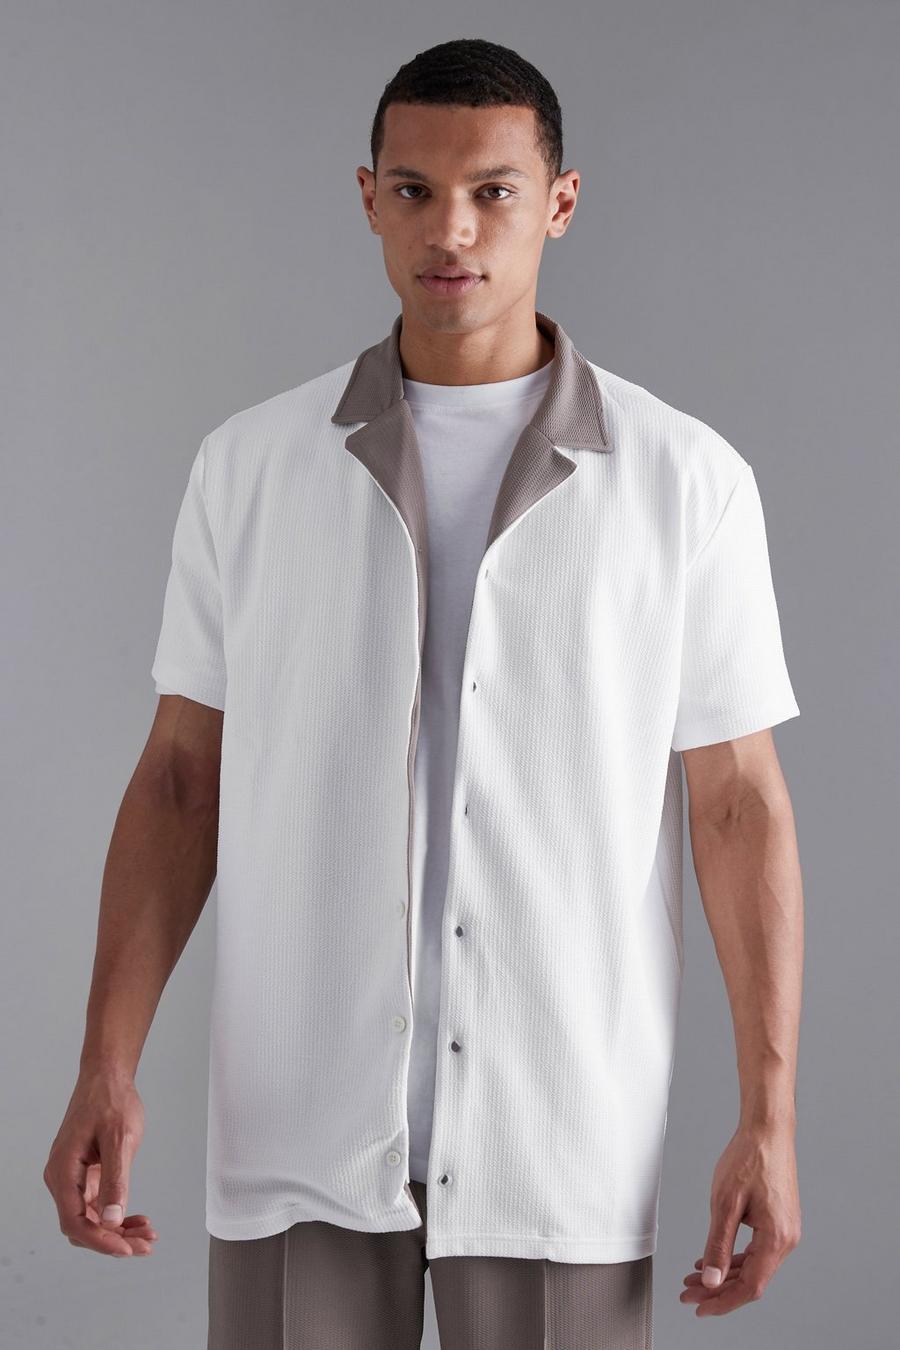 שמנת bianco חולצה מבד ג'רסי עם טקסטורה ושרוולים קצרים, לגברים גבוהים